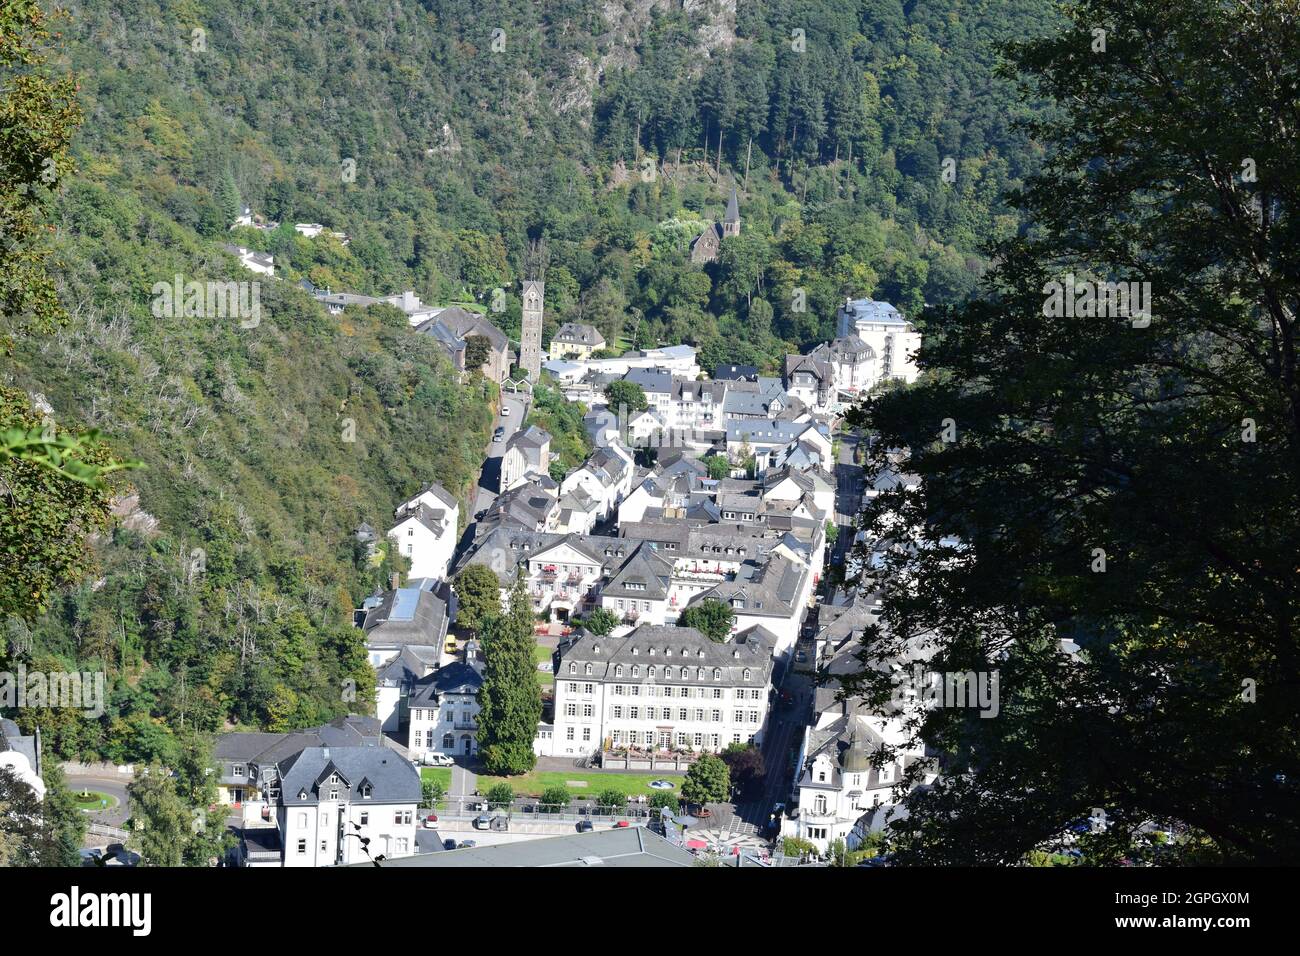 Vista a través del pueblo balneario Bad Bertrich en el Eifel Foto de stock